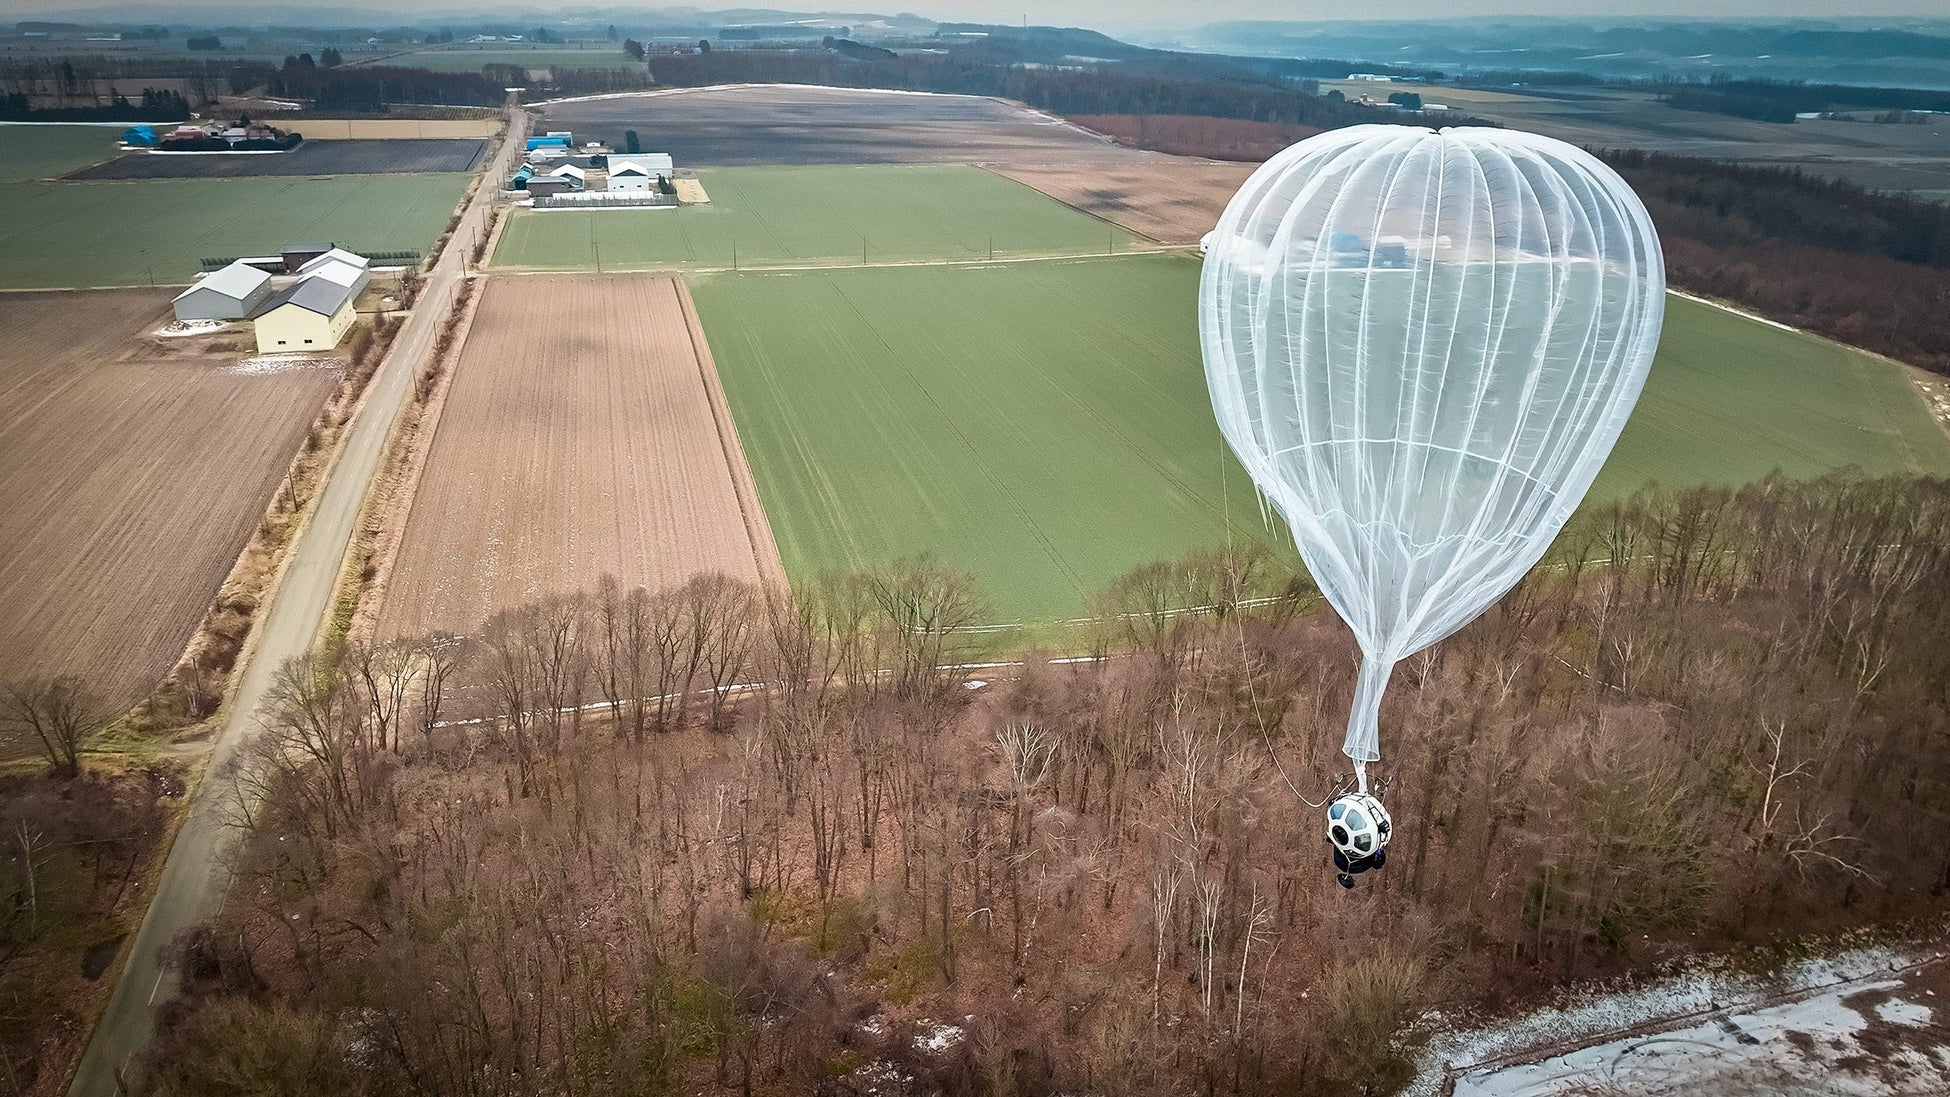 松竹ベンチャーズ、気球による宇宙遊覧を目指す㈱岩谷技研に出資